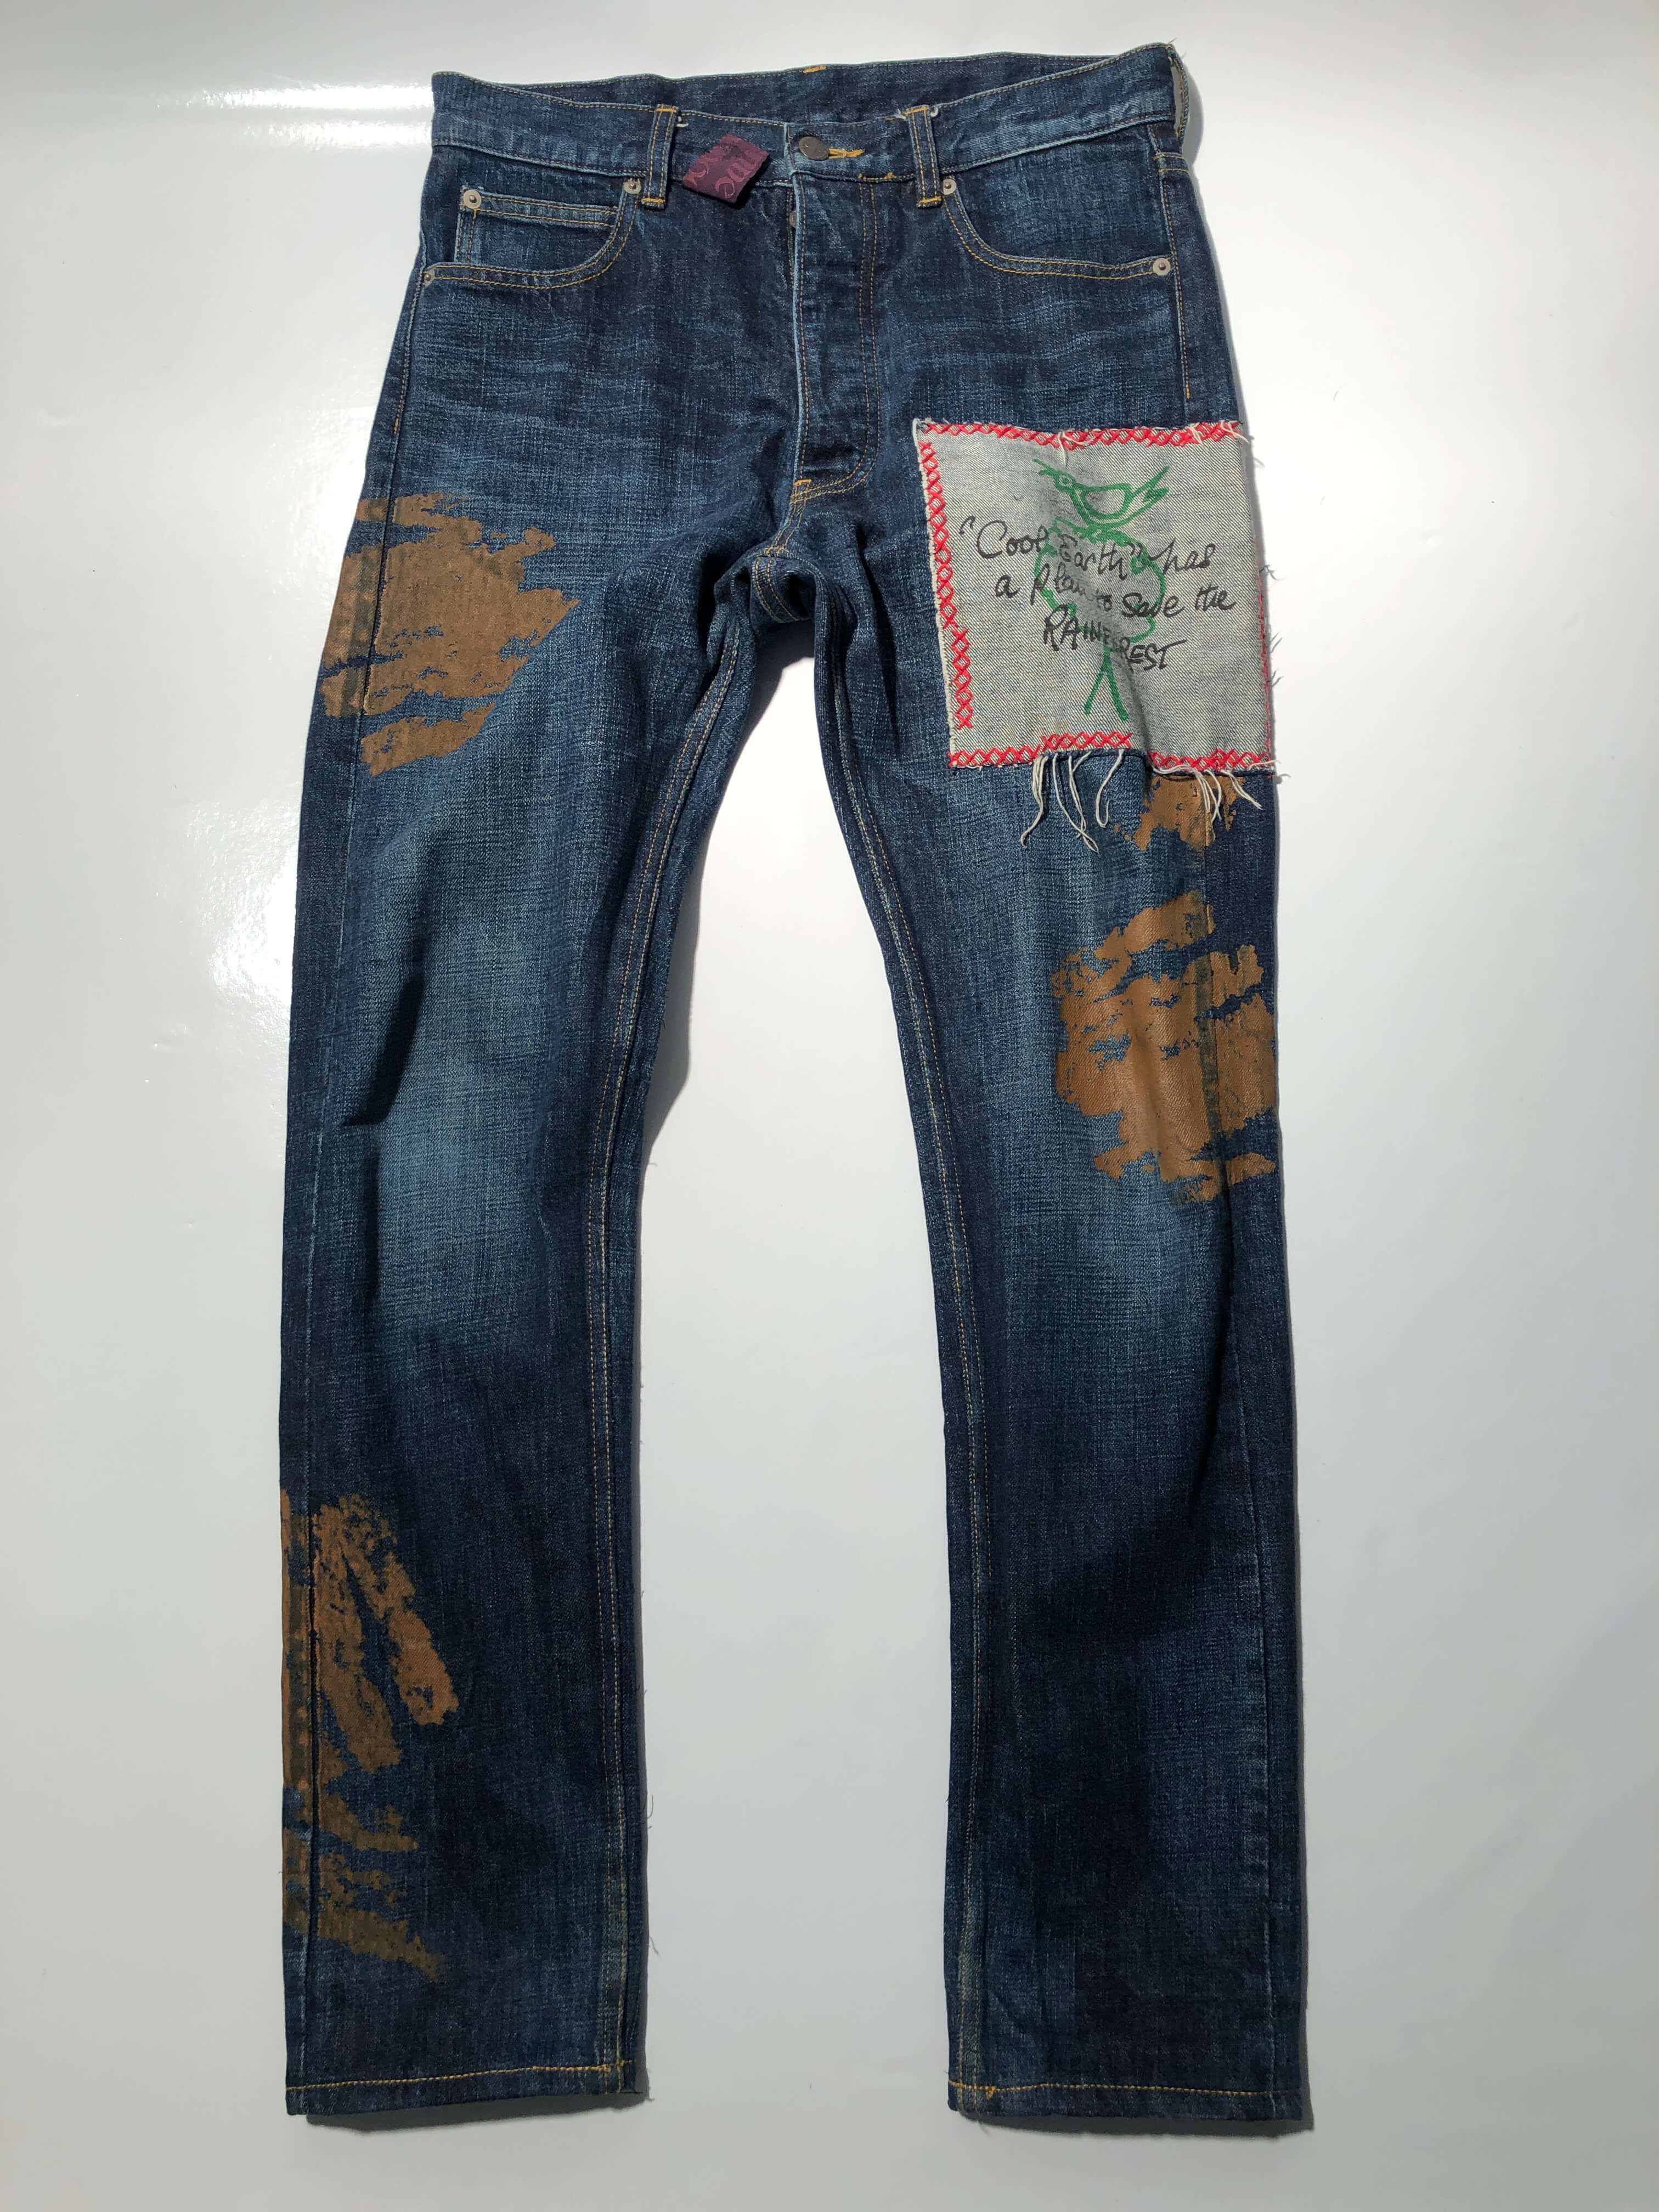 vivienne westwood patchwork jeans